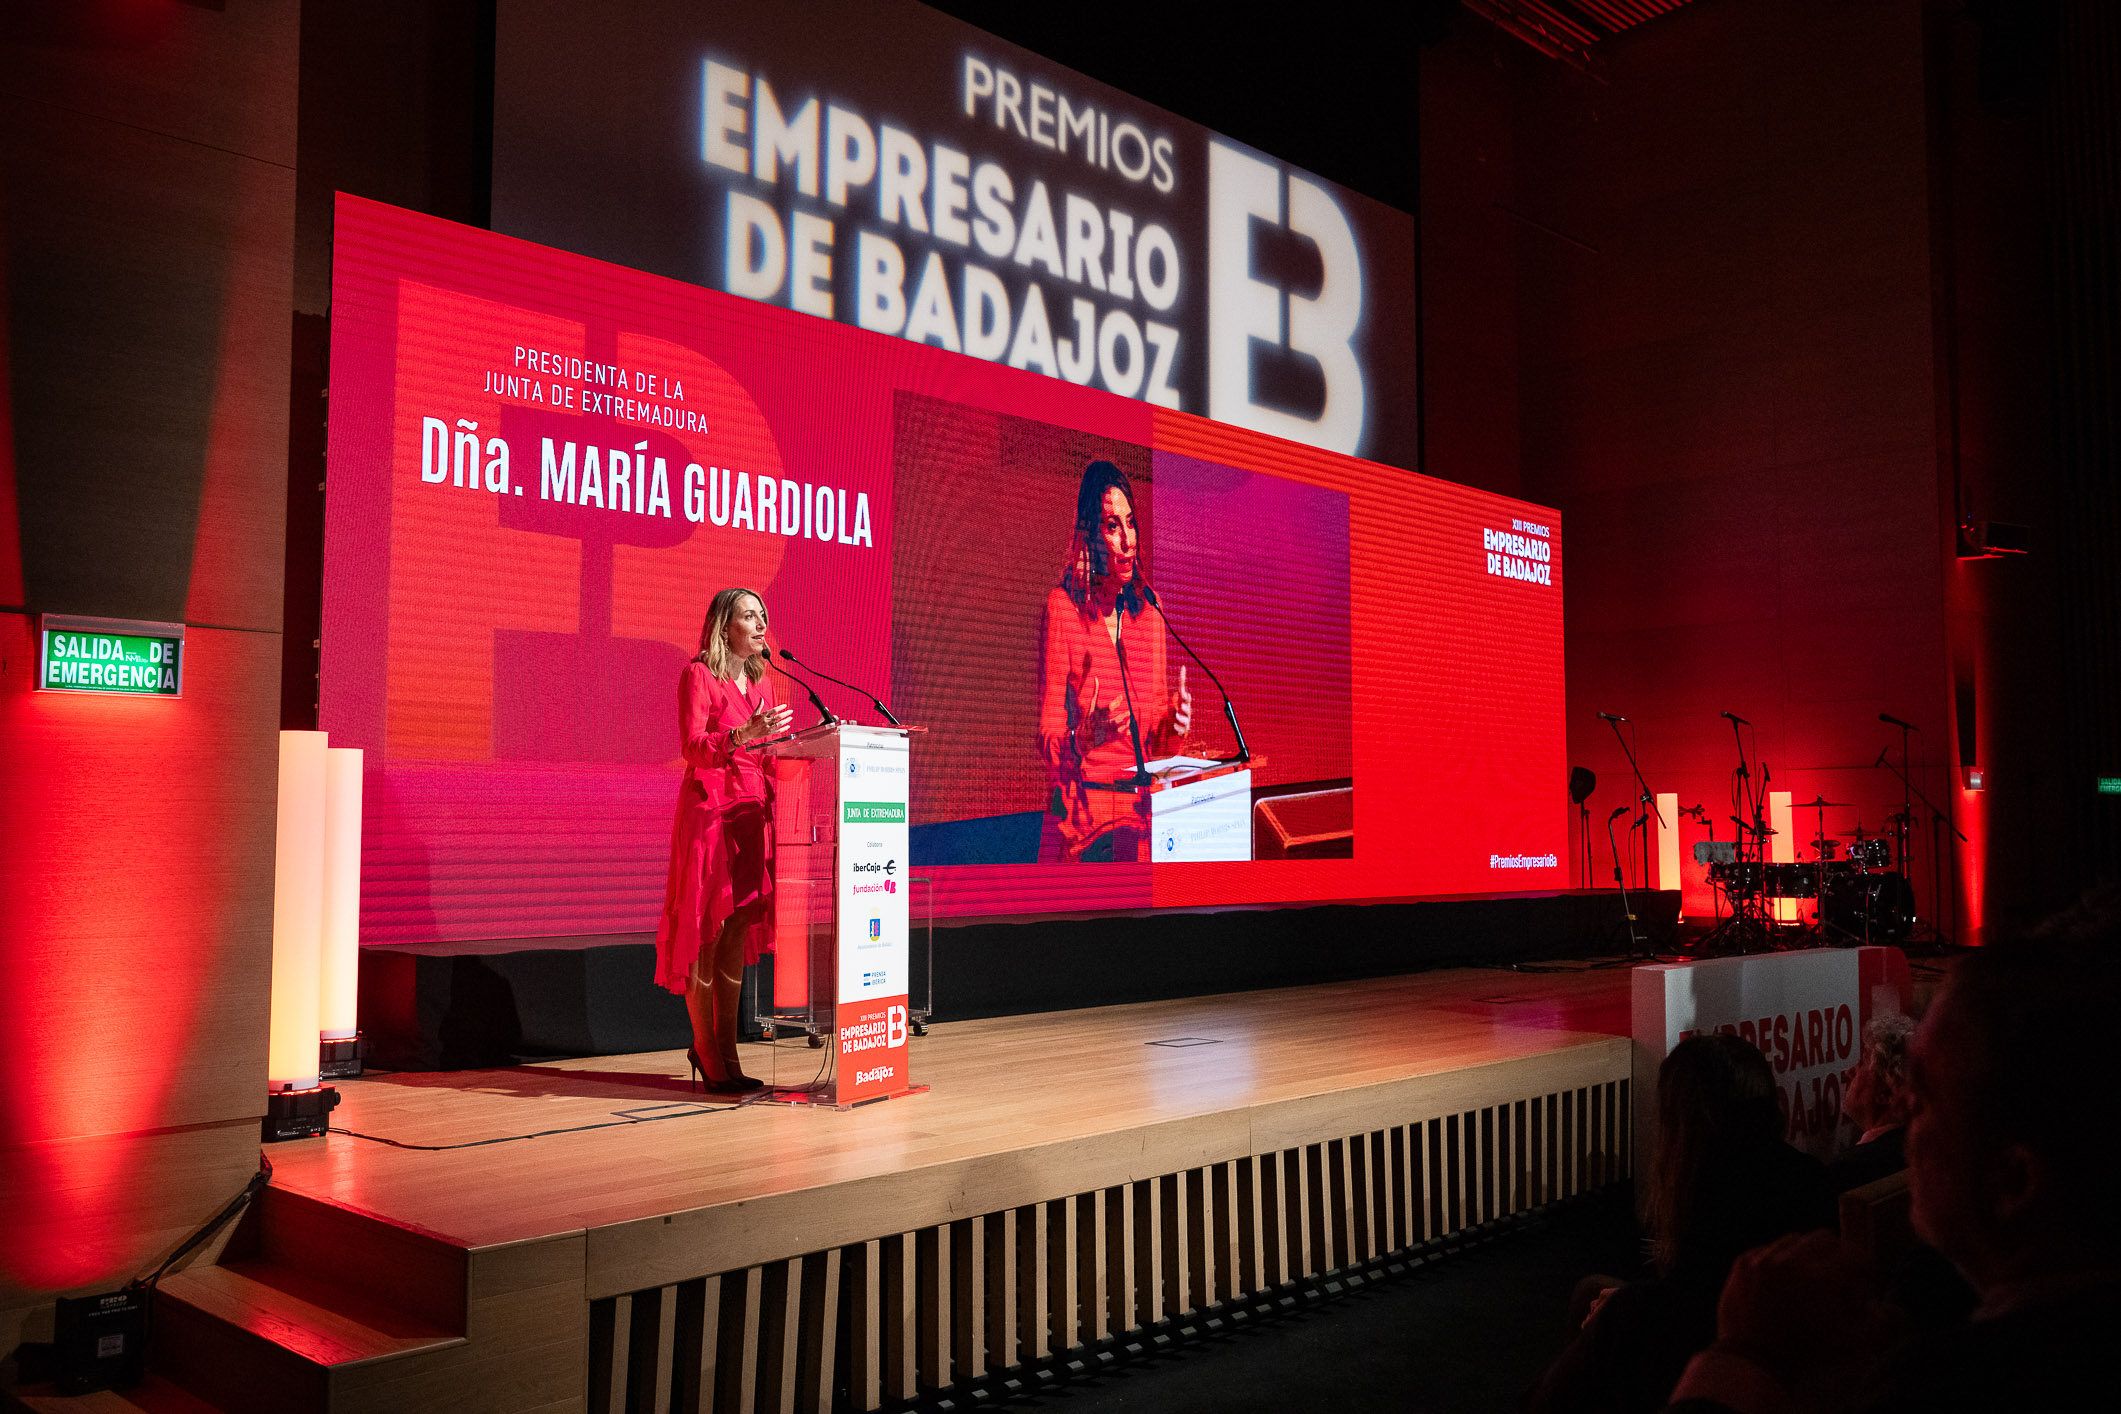 Image 13 of article Guardiola alaba el trabajo de los empresarios de Badajoz y su contribución a la economía, el empleo y el desarrollo de Extremadura